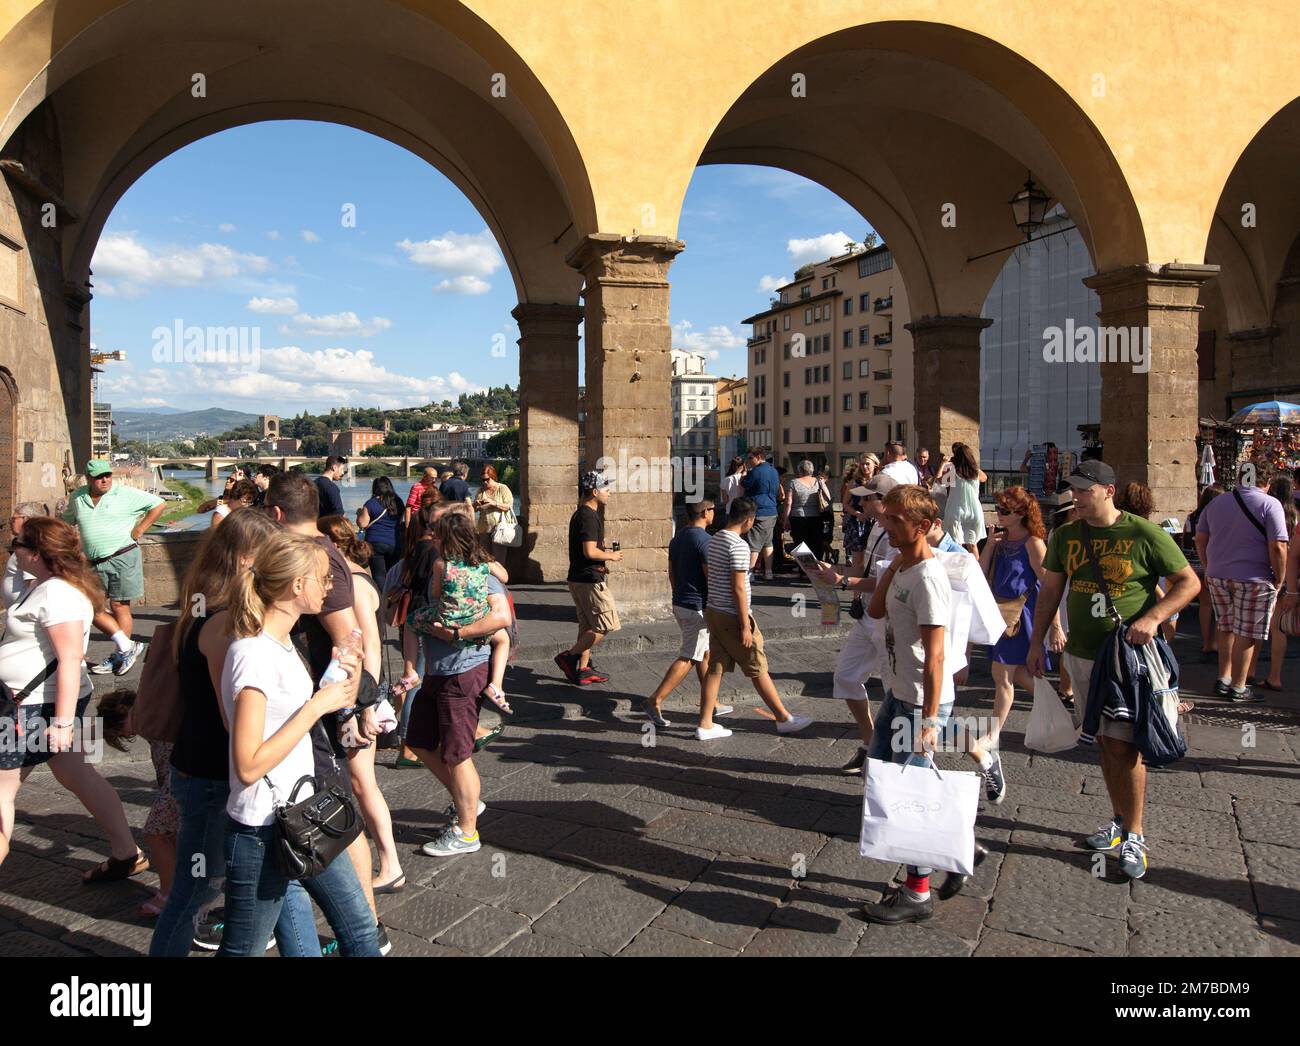 FIRENZE, ITALIA IL 25 AGOSTO 2014. Foto delle persone che passeggiando sul Ponte Vecchio. Persone non identificate. Uso editoriale. Foto Stock